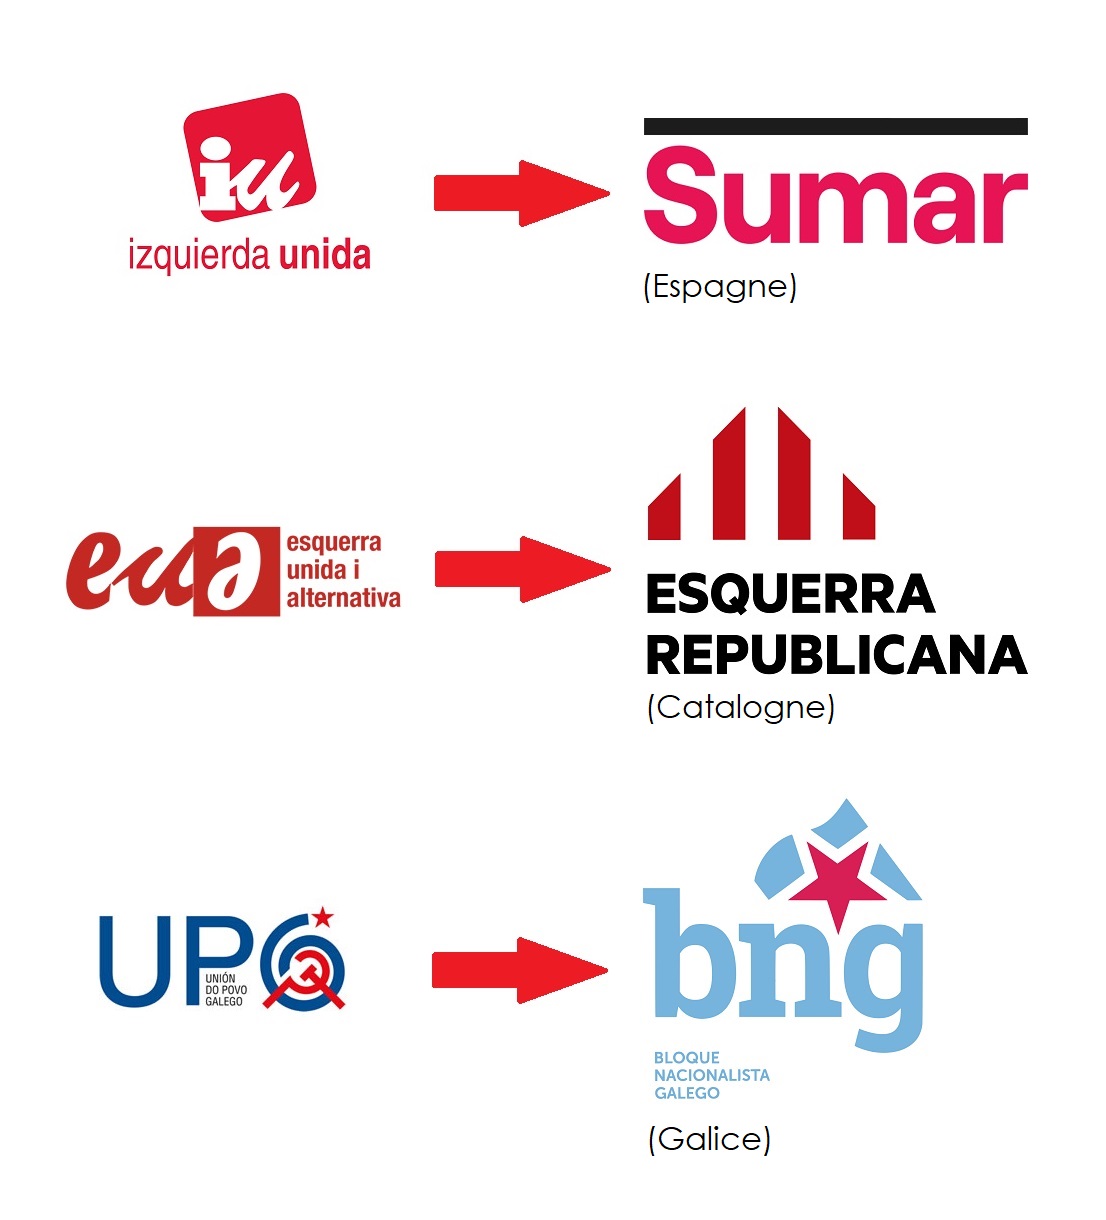 Le point sur les candidatures communistes et apparentés pour les élections législatives en Espagne